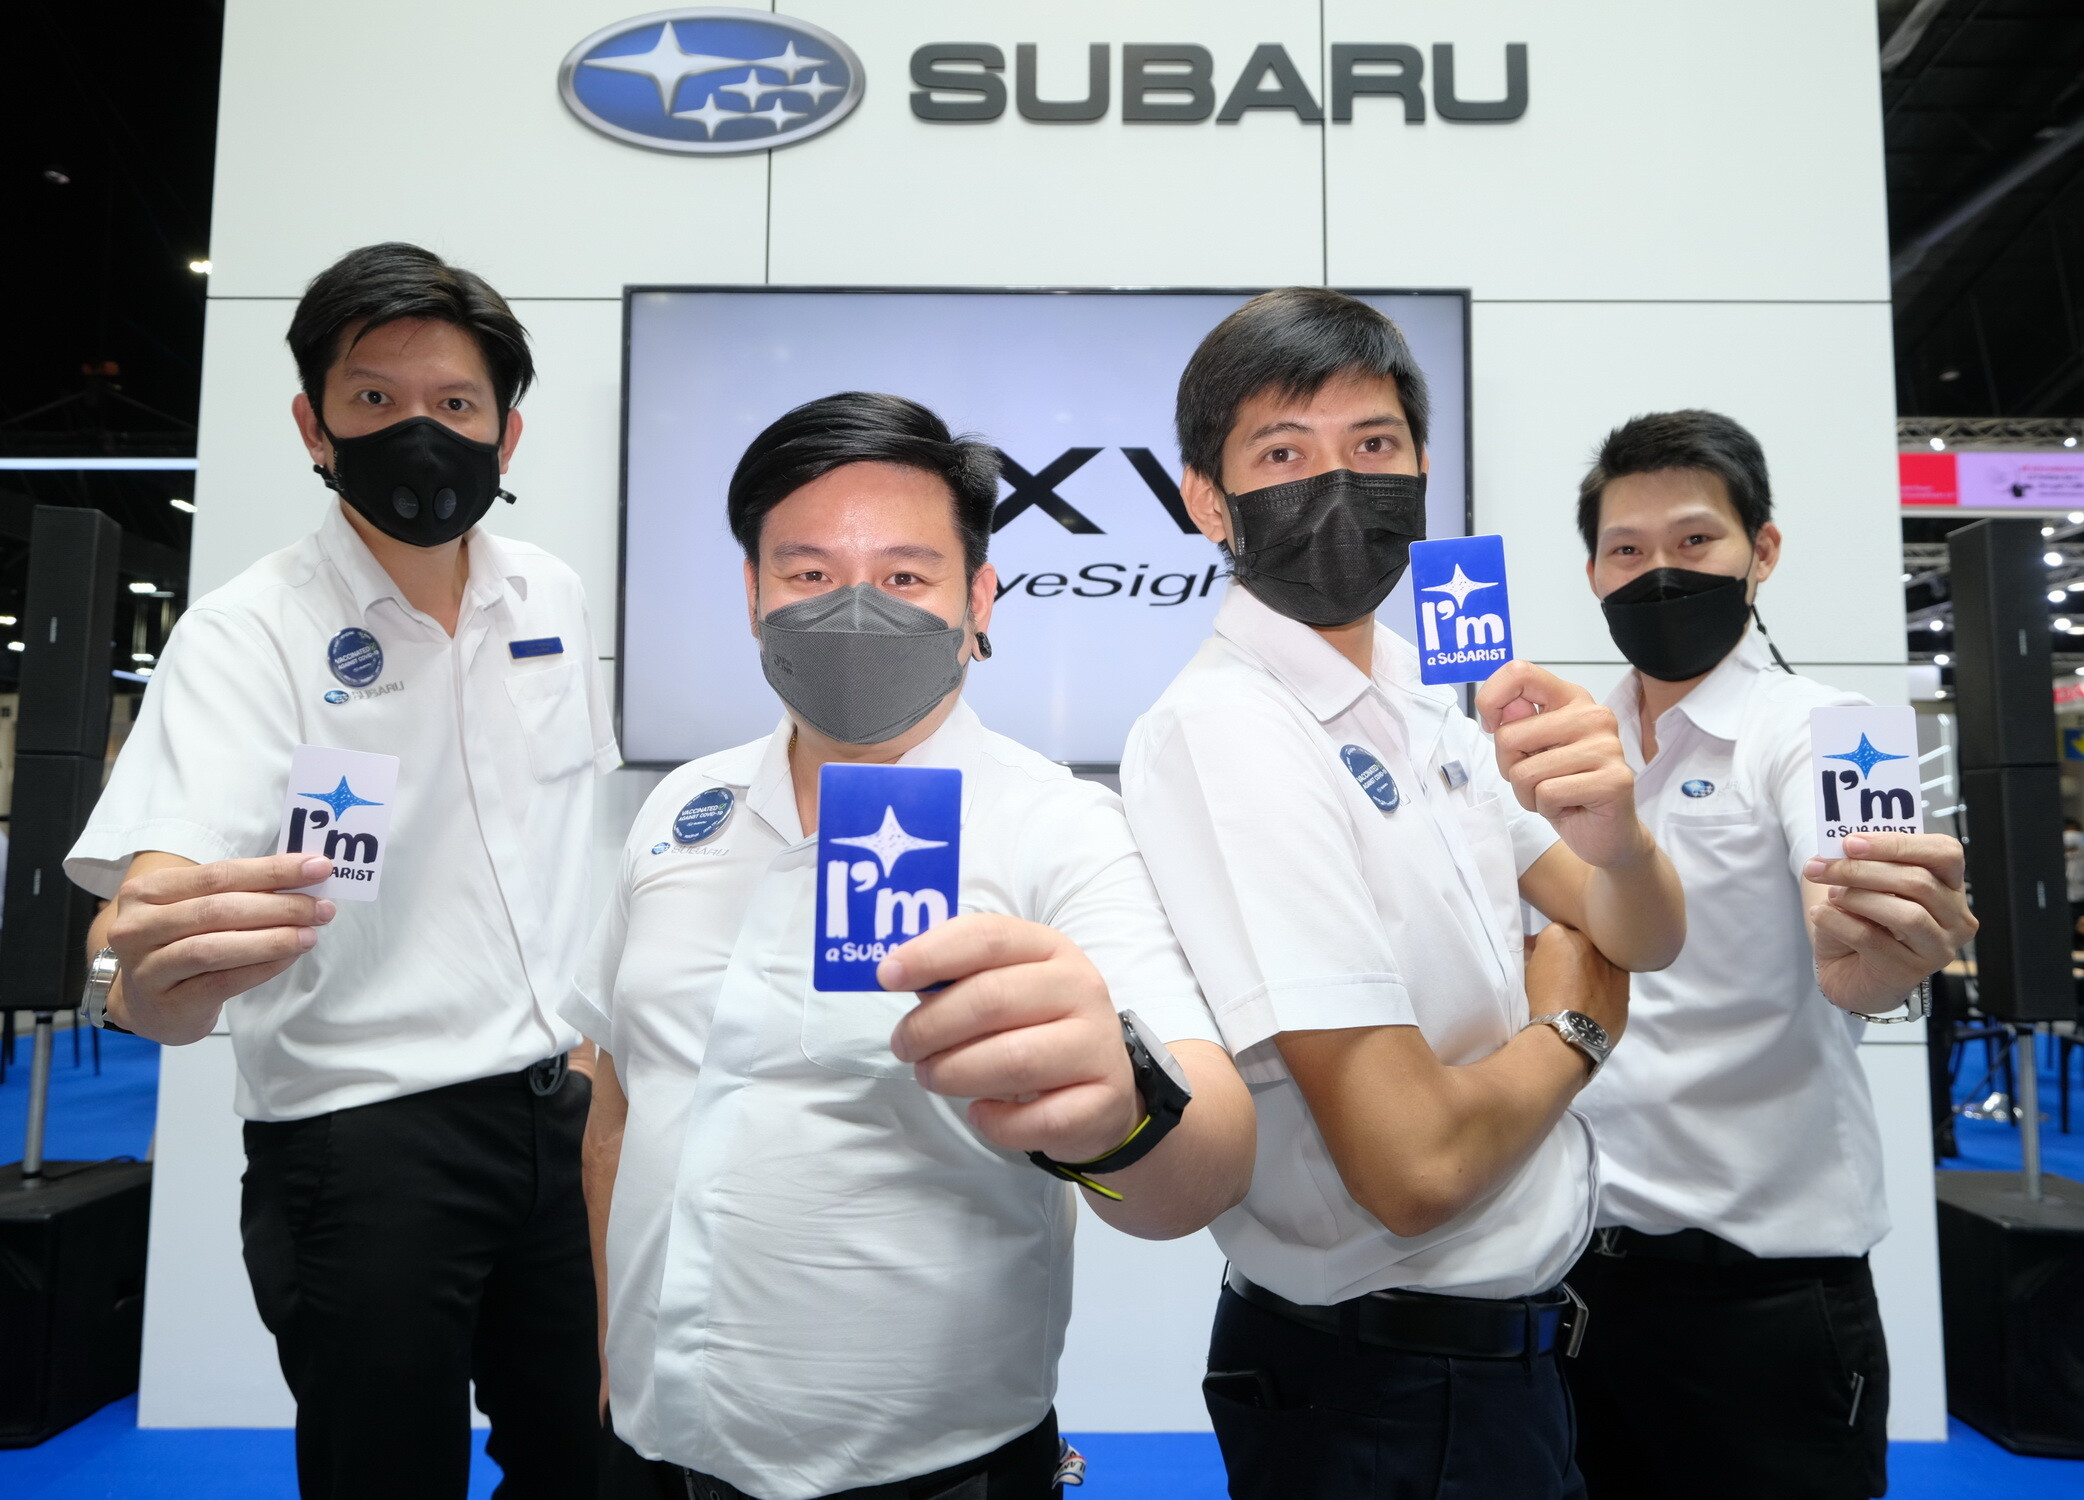 ซูบารุ แนะนำ "Subarist" ผู้เชี่ยวชาญในรถยนต์ซูบารุ พร้อมต้อนรับและให้คำปรึกษาลูกค้าที่สนใจในงาน Motor Expo 2021